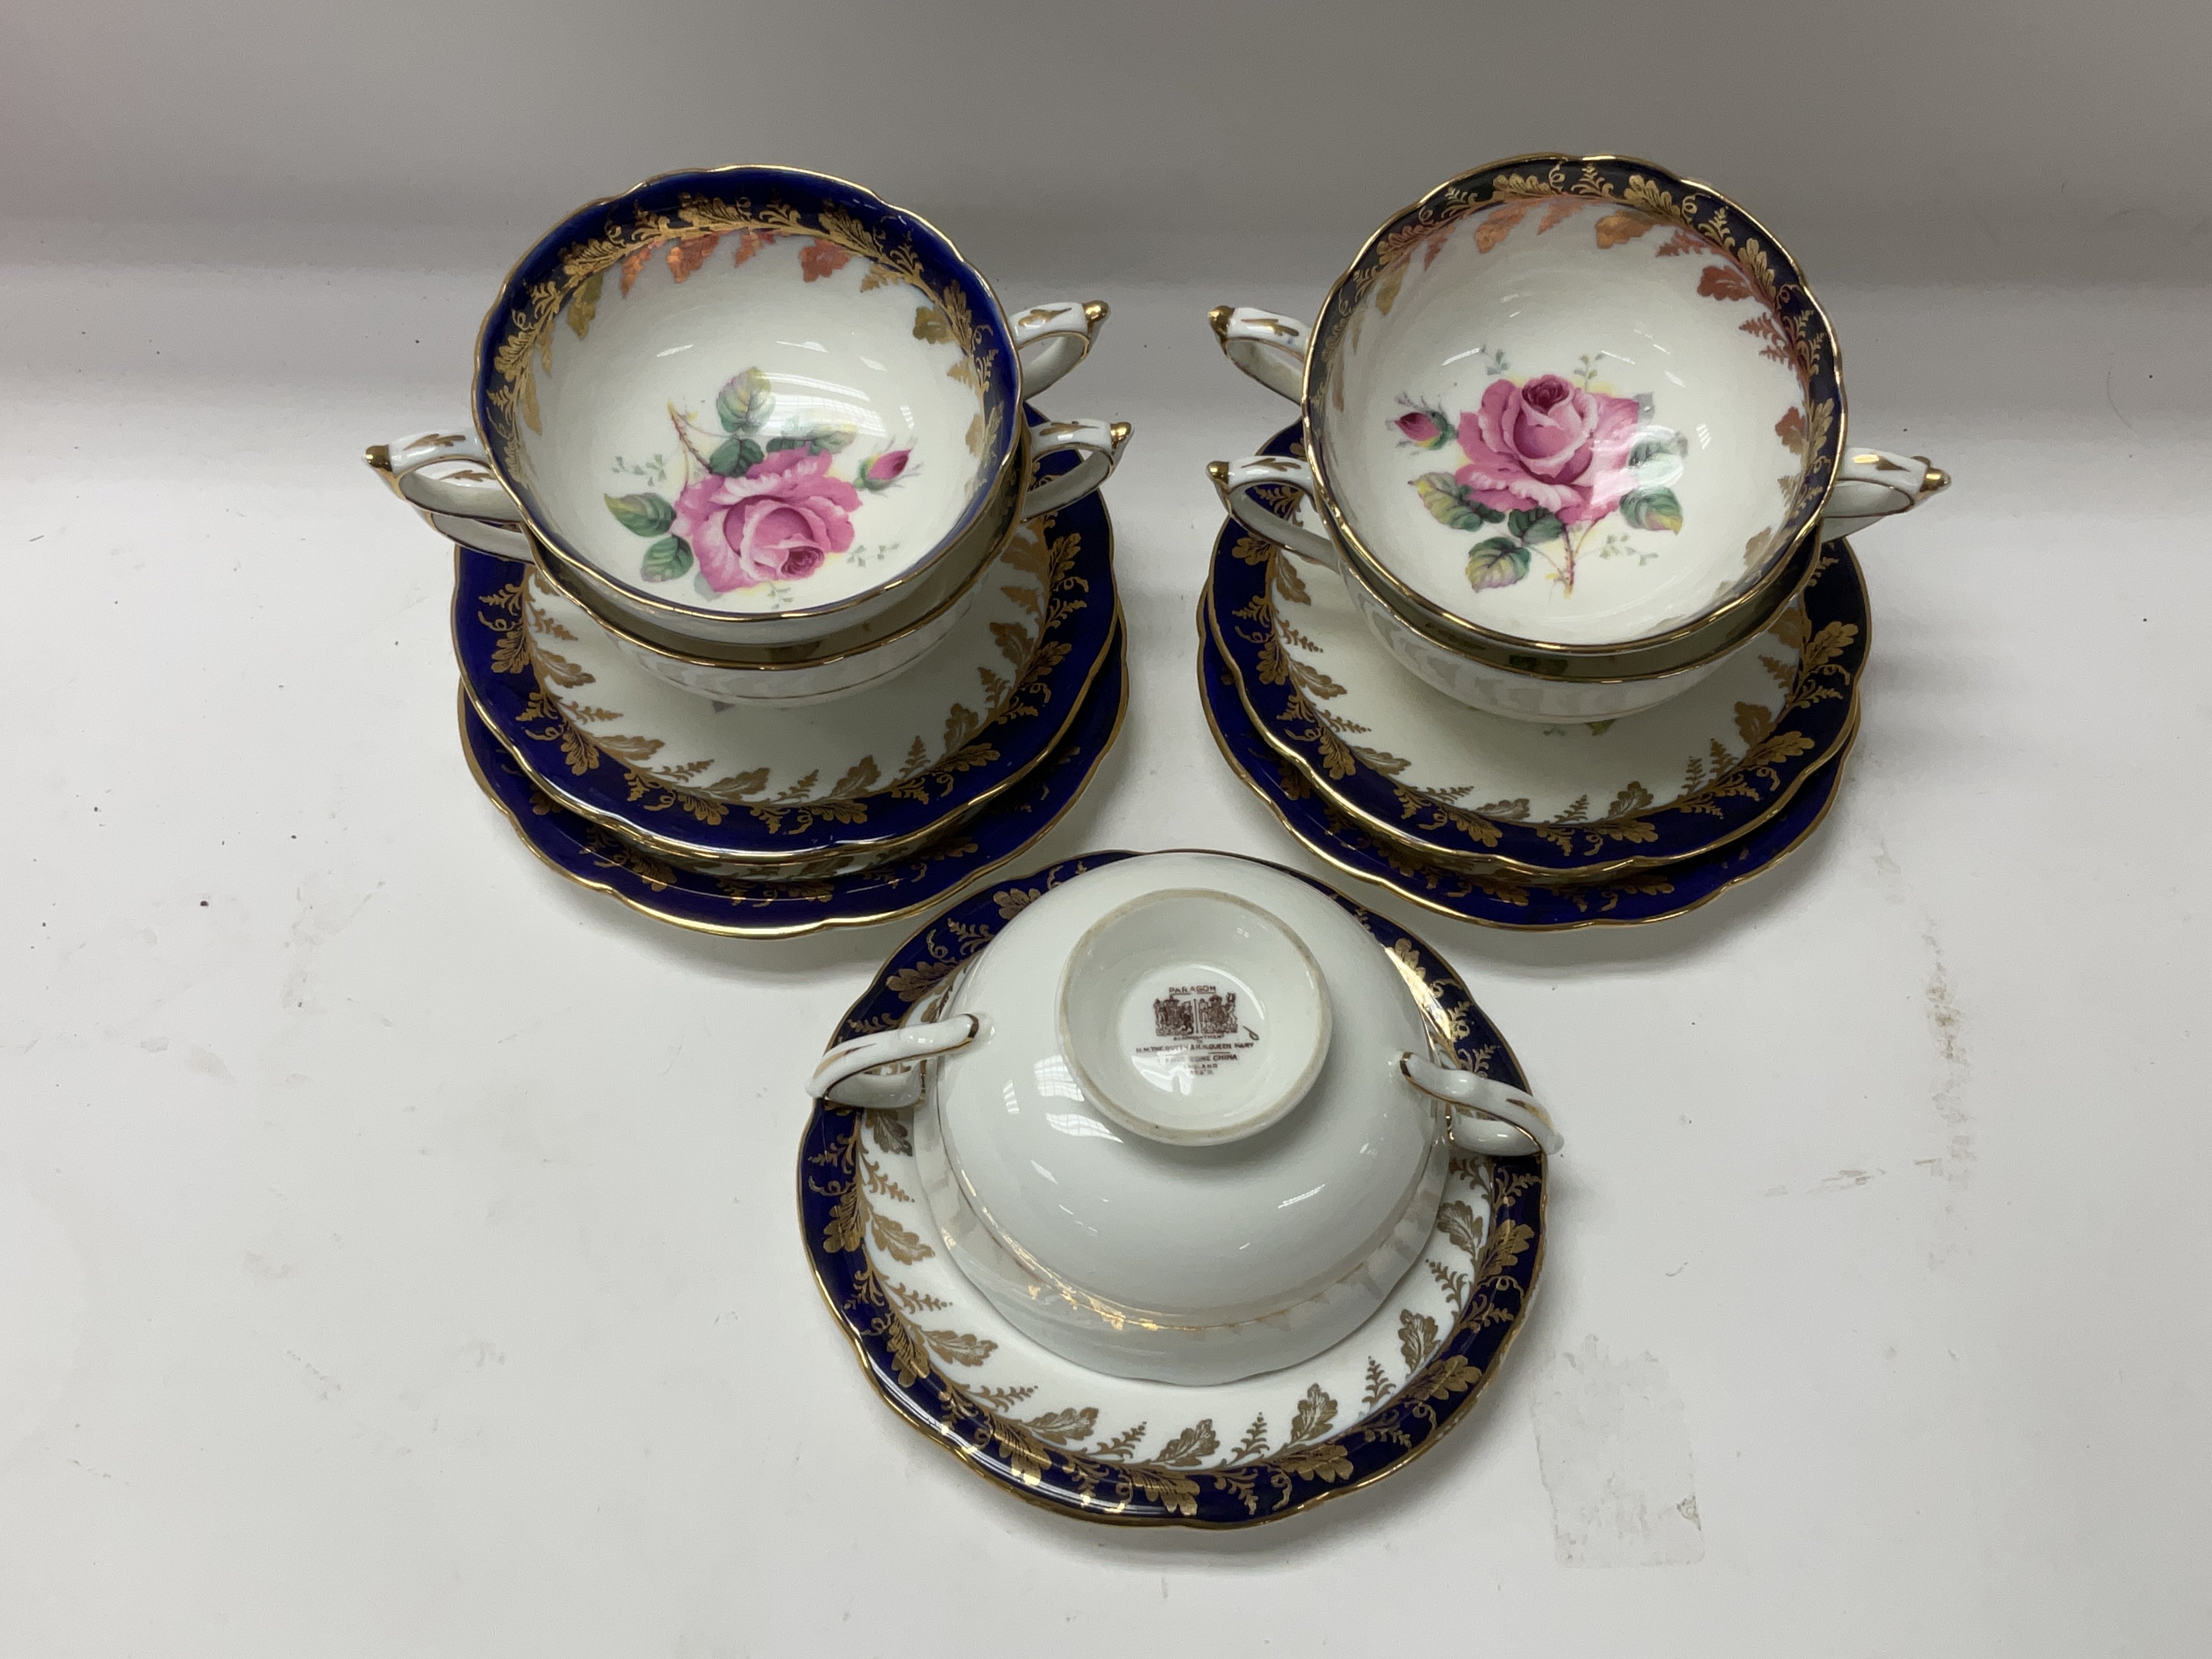 5 Paragon porcelain soup bowls and saucers.